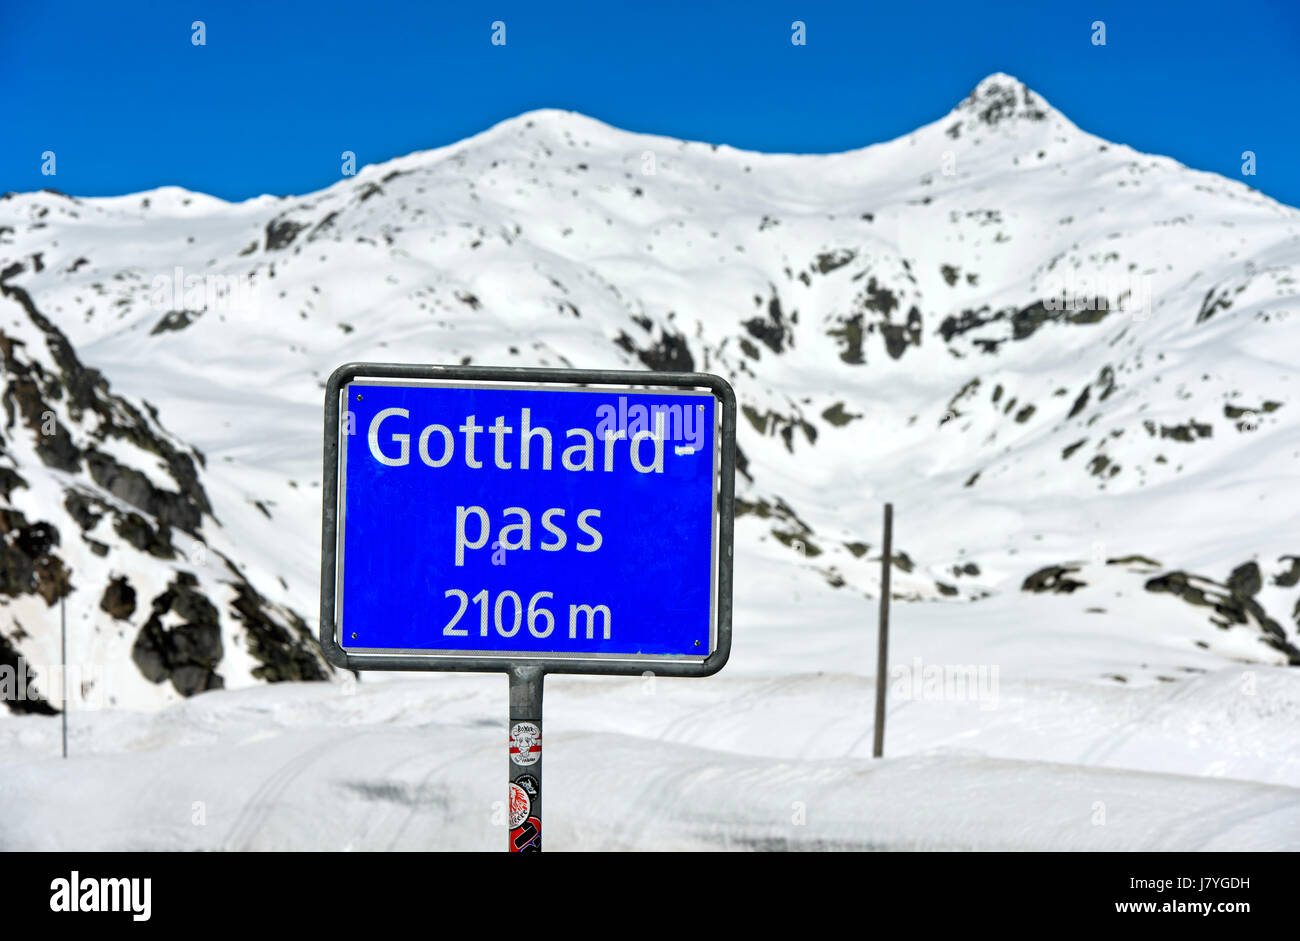 Signer avec indication de l'altitude sur le col d'altitude du sommet, Col du Gotthard, Airolo, Canton du Tessin, Suisse Banque D'Images